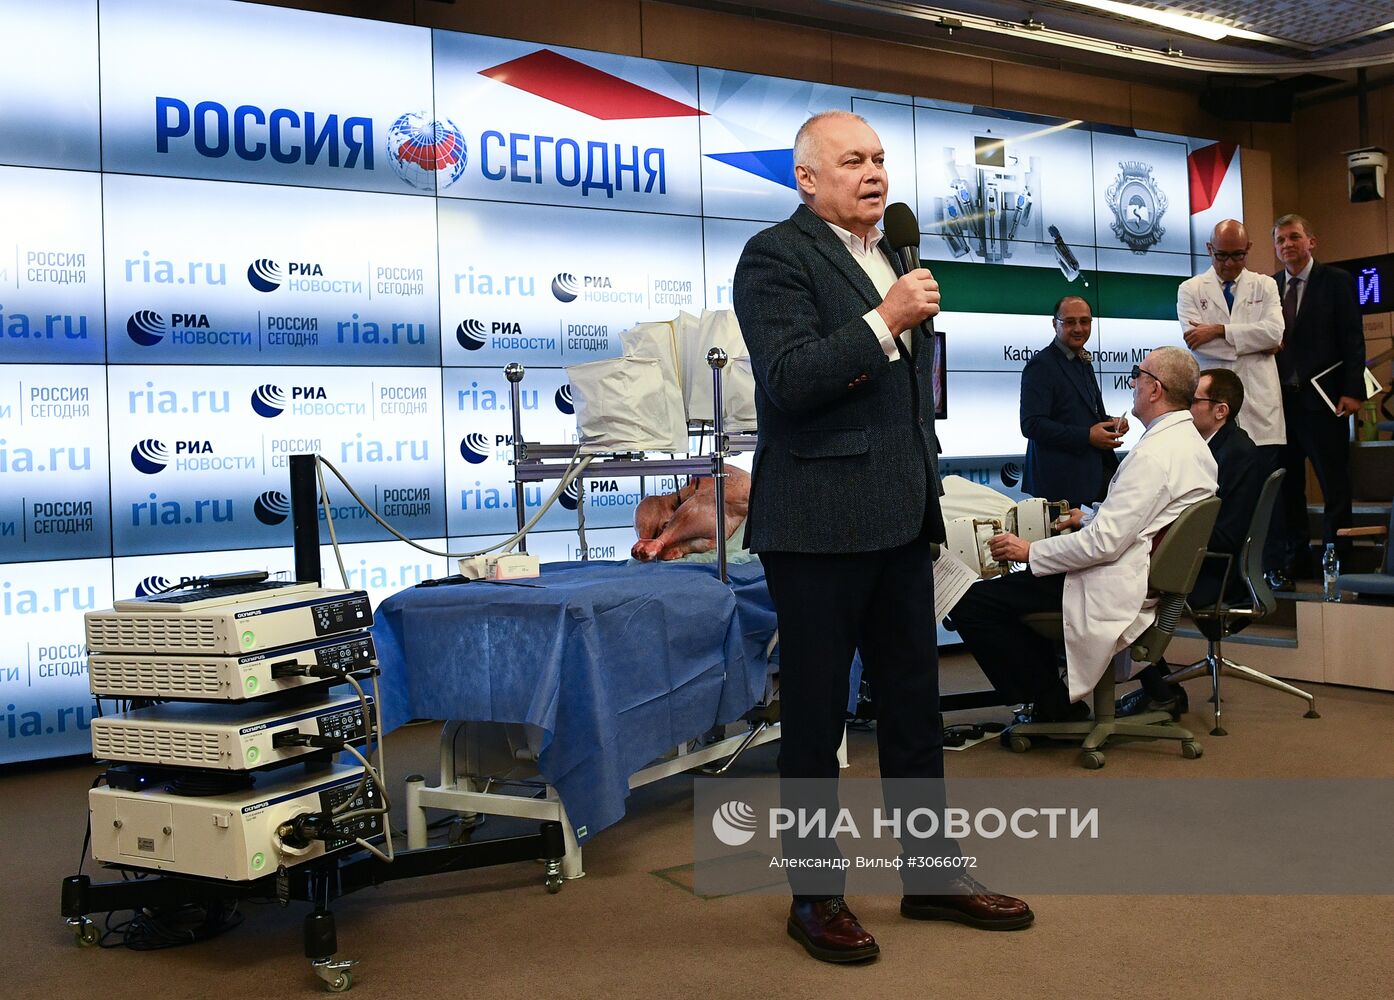 Презентация российского ассистирующего роботохирургического комплекса в МИА "Россия сегодня"